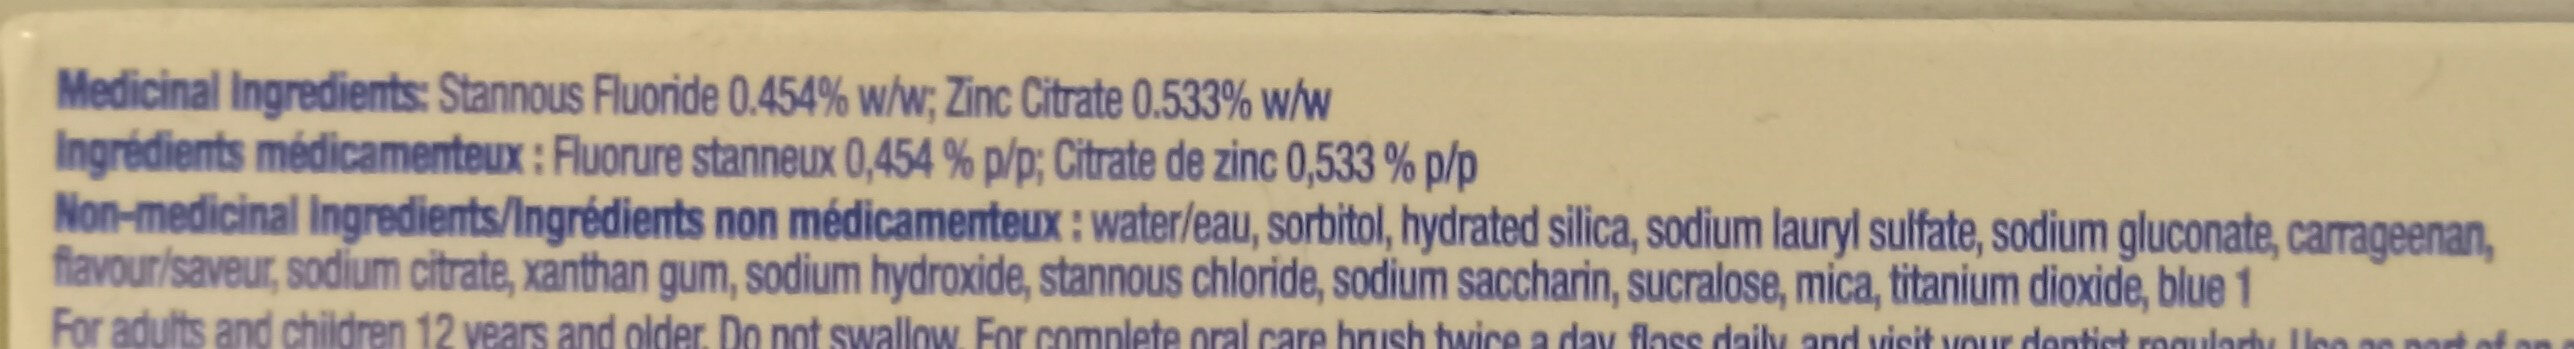 Whitening Gel Flouride Toothpaste - Ingredients - en